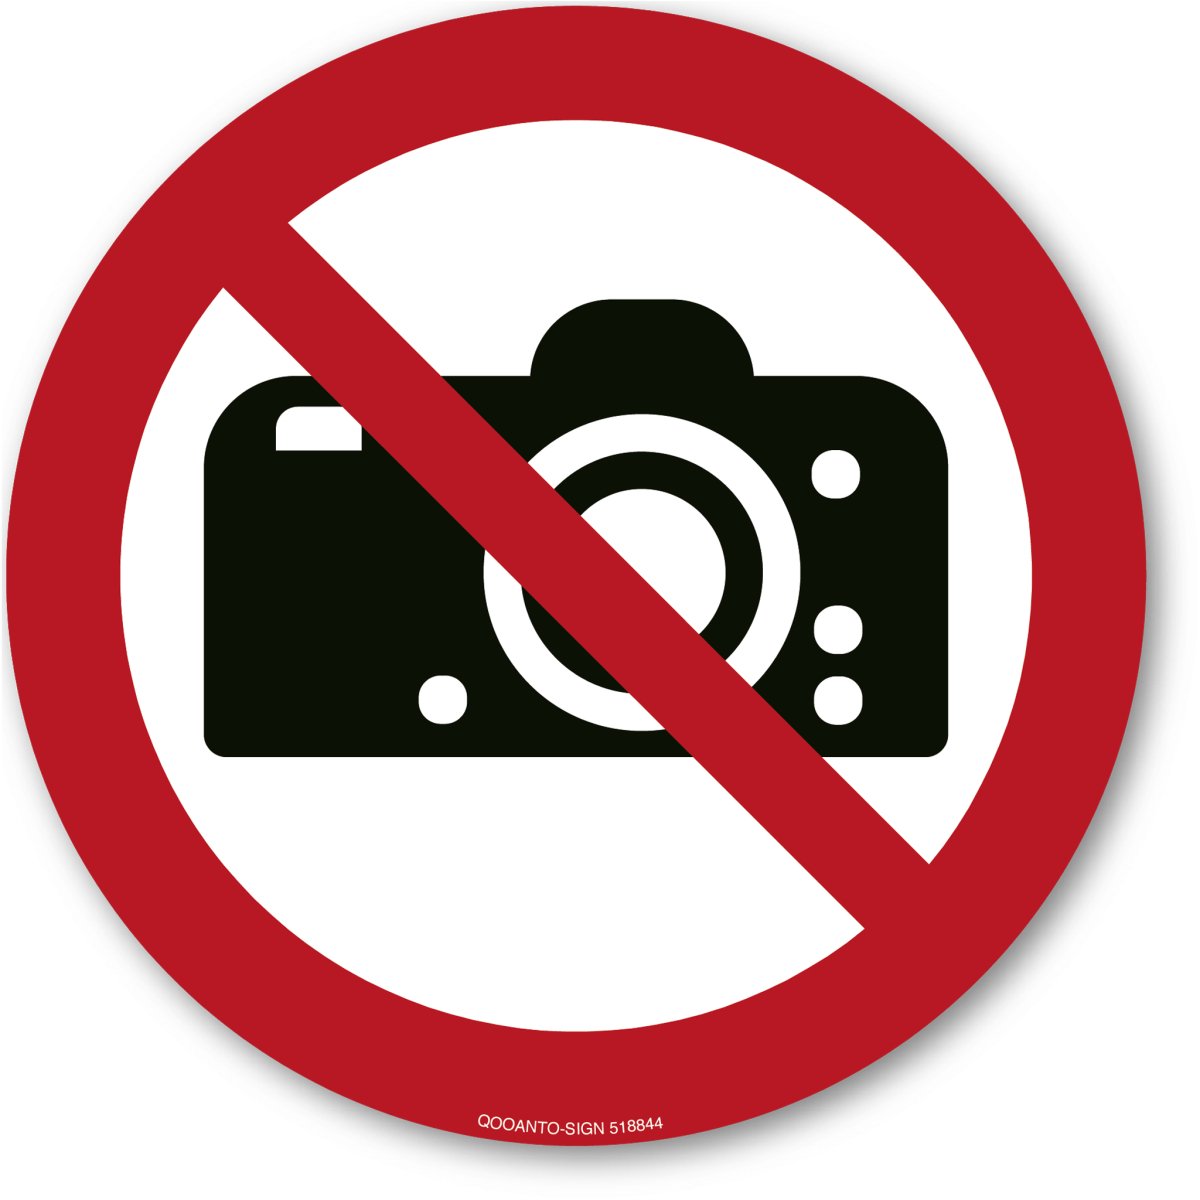 Fotografieren Verboten, EN ISO 7010, P029 Verbotsschild oder Aufkleber aus Alu-Verbund oder Selbstklebefolie mit UV-Schutz - QOOANTO-SIGN